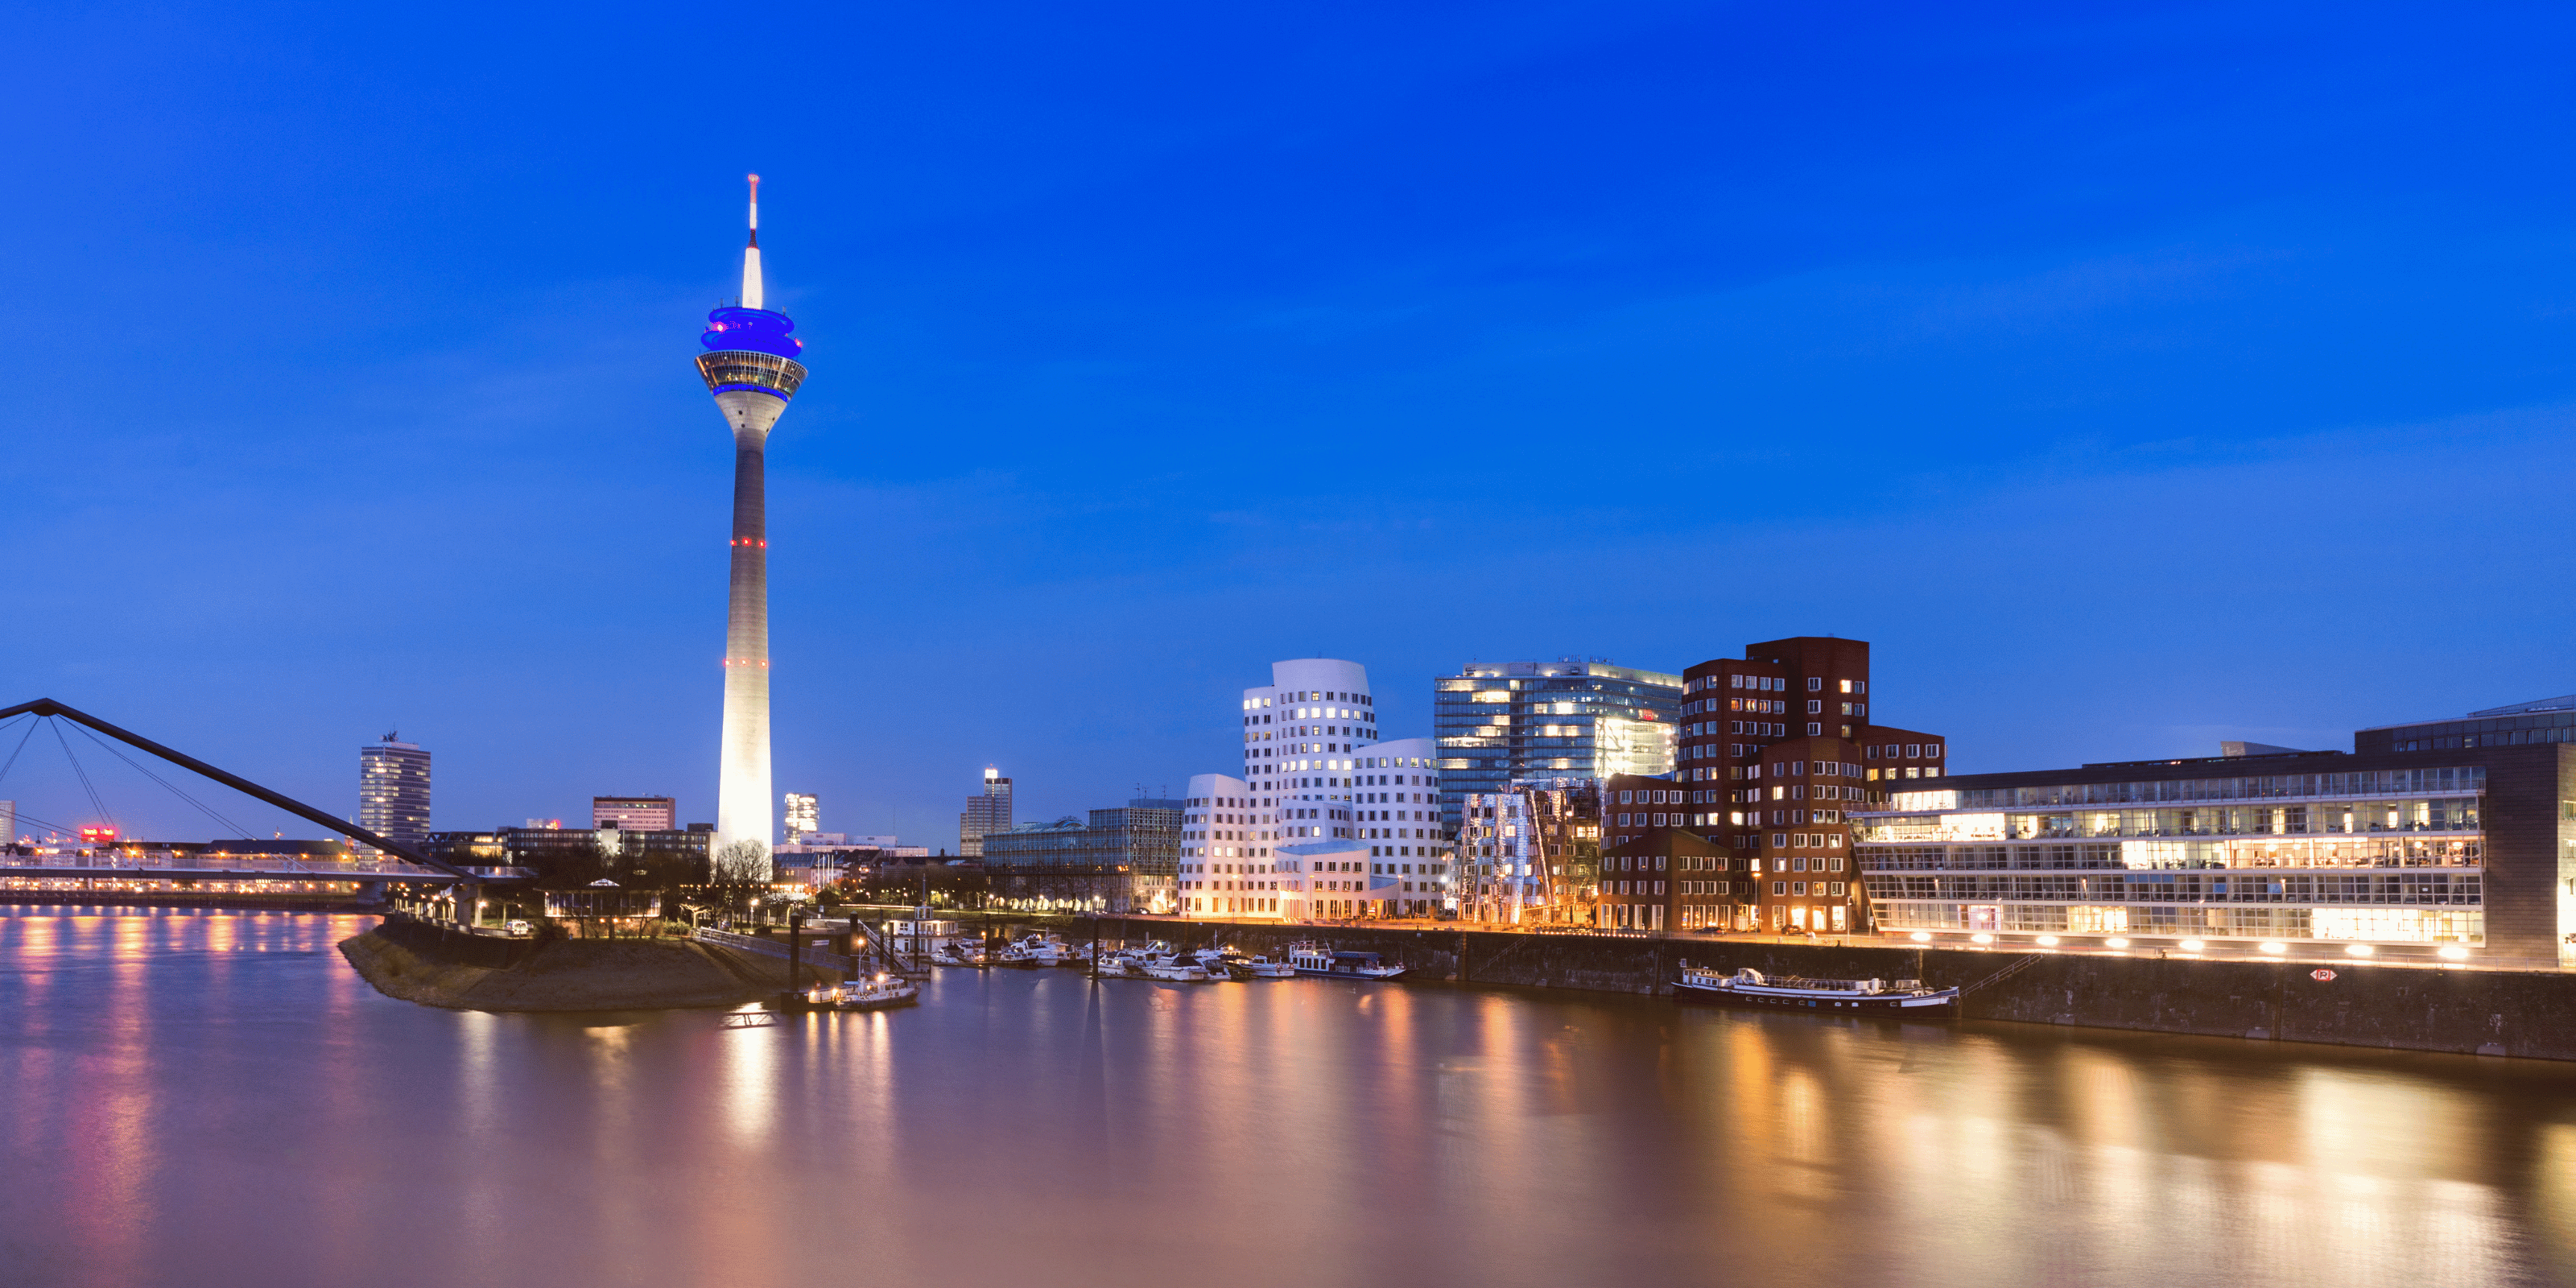 Skyline von Düsseldorf am Abend mit Rheinturm und modernen Gebäuden